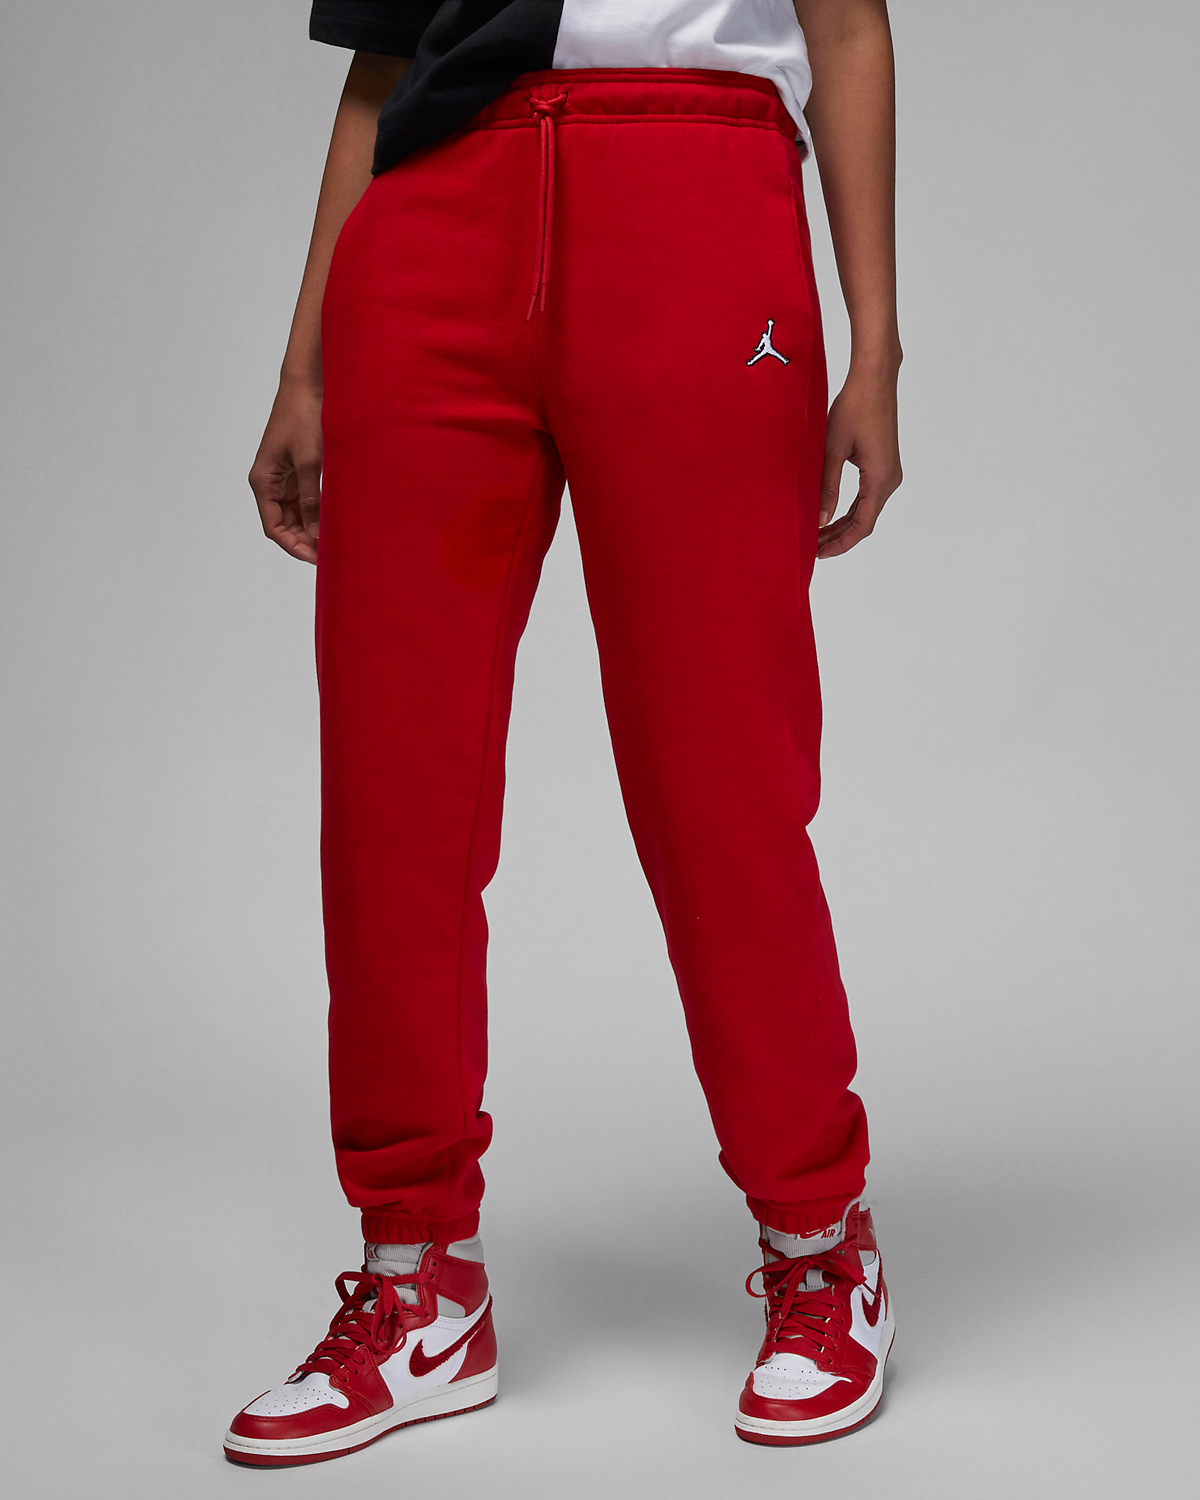 jordan-brooklyn-womens-fleece-pants-red-1